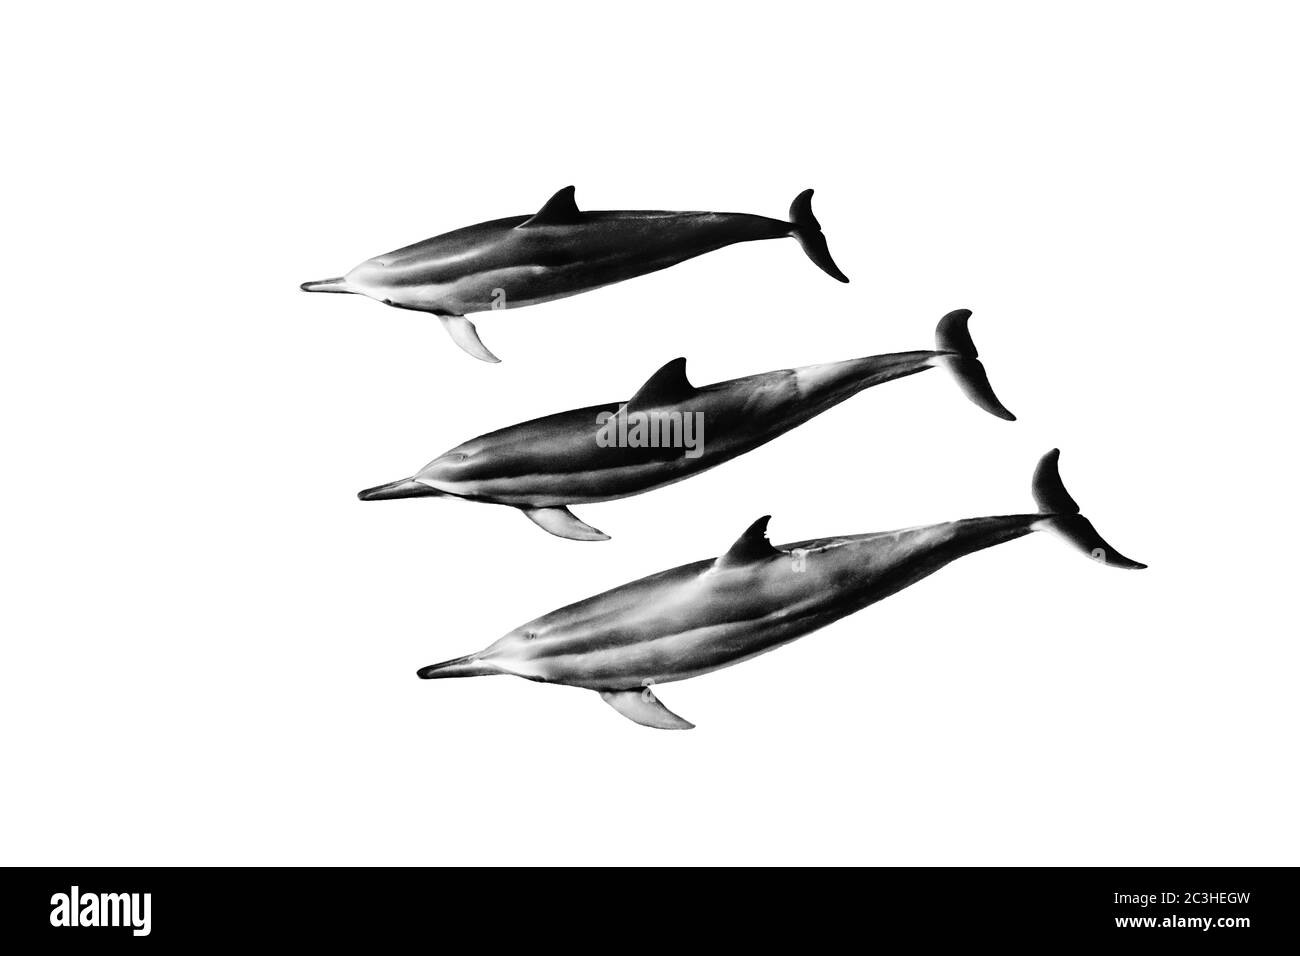 Belle illustration de trois dauphins gris sur fond blanc Banque D'Images